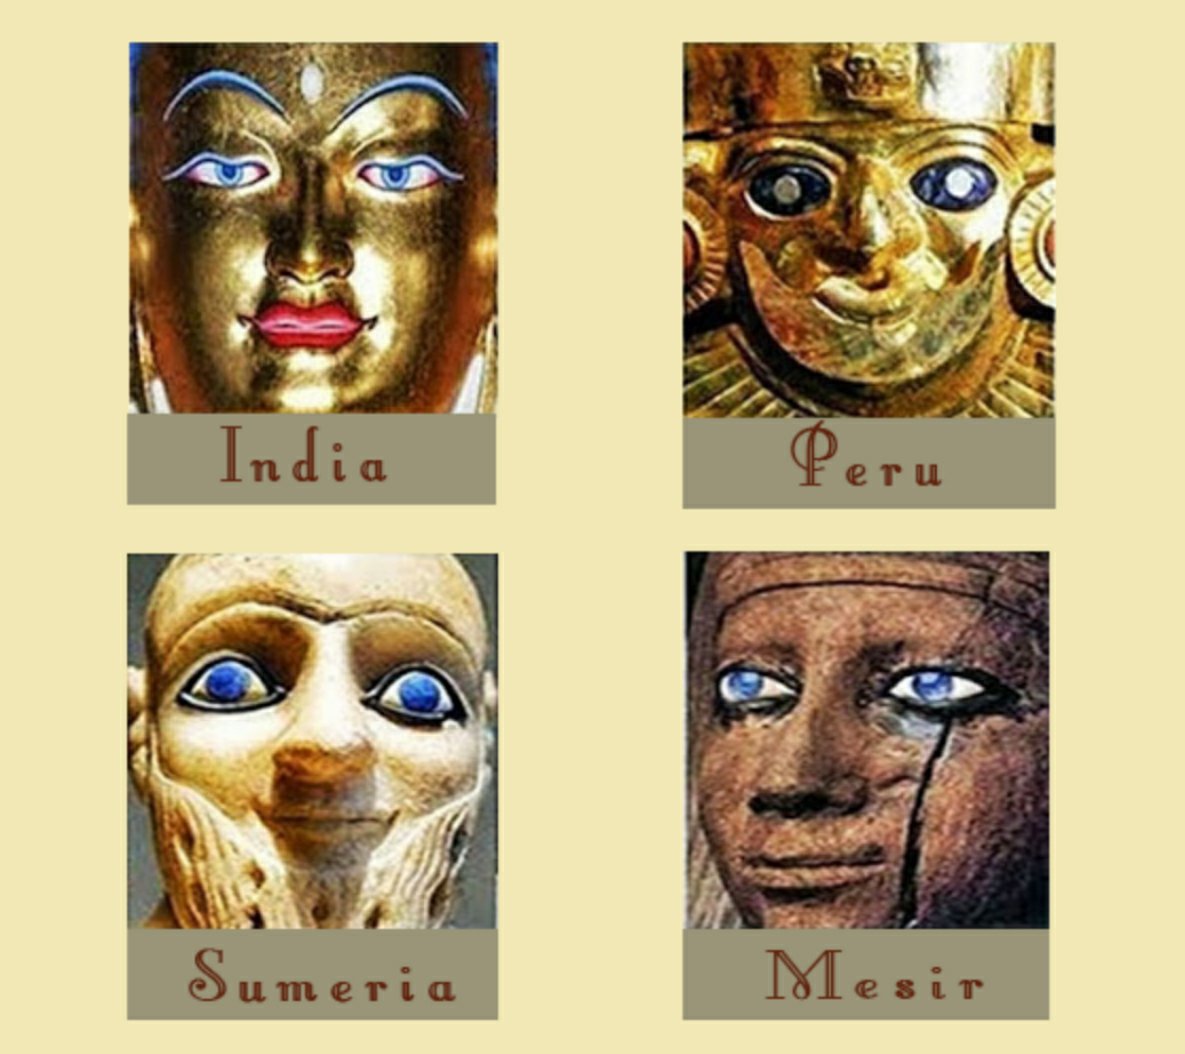 Πολλοί αρχαίοι πολιτισμοί απεικόνιζαν όντα με μπλε μάτια.